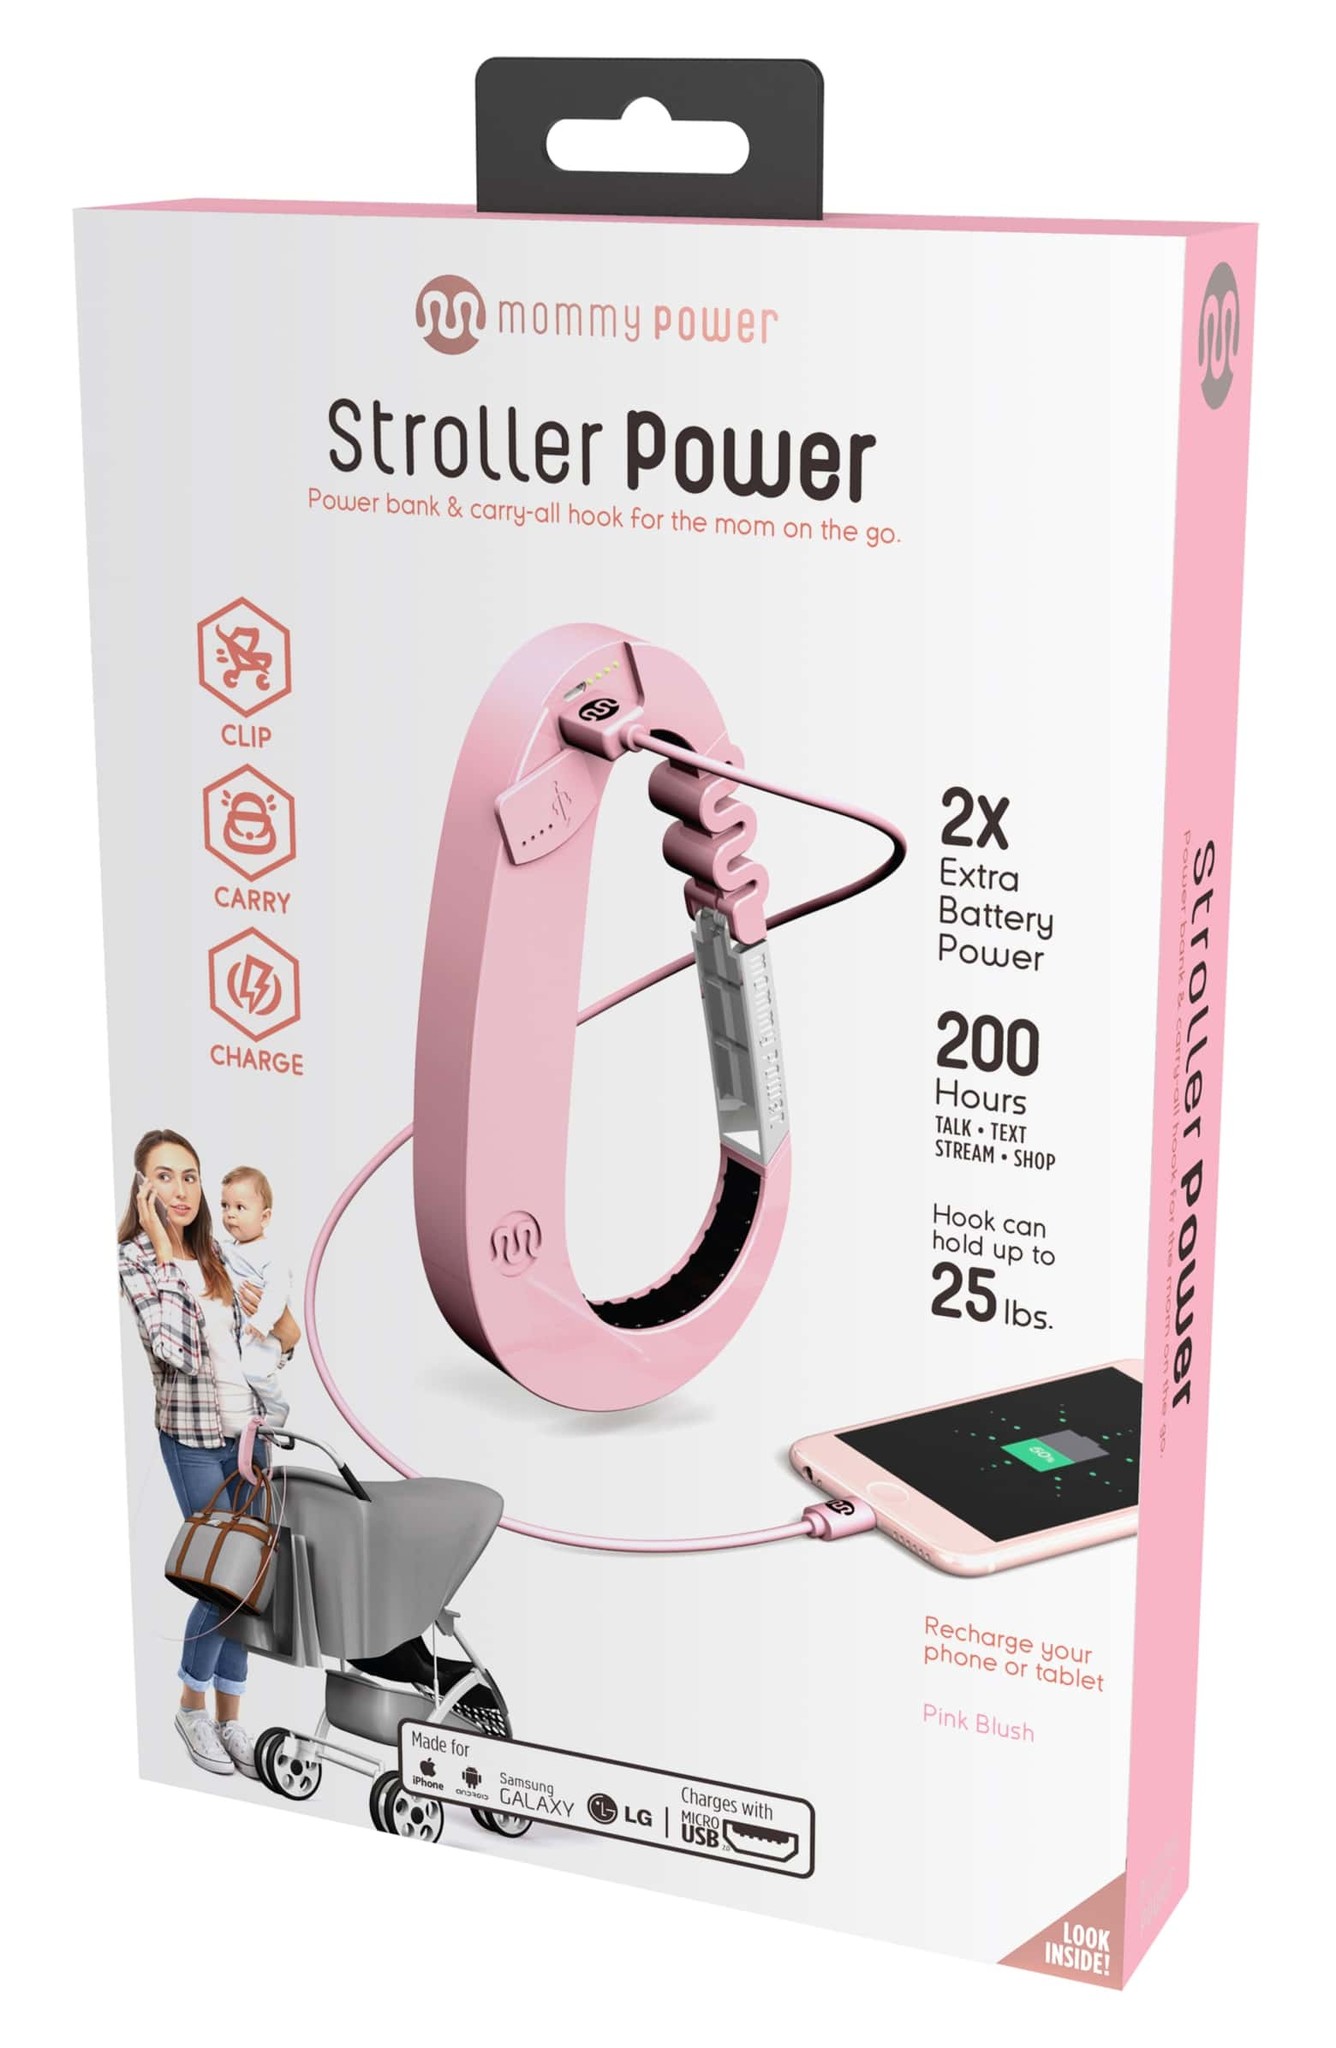 mommy power stroller power